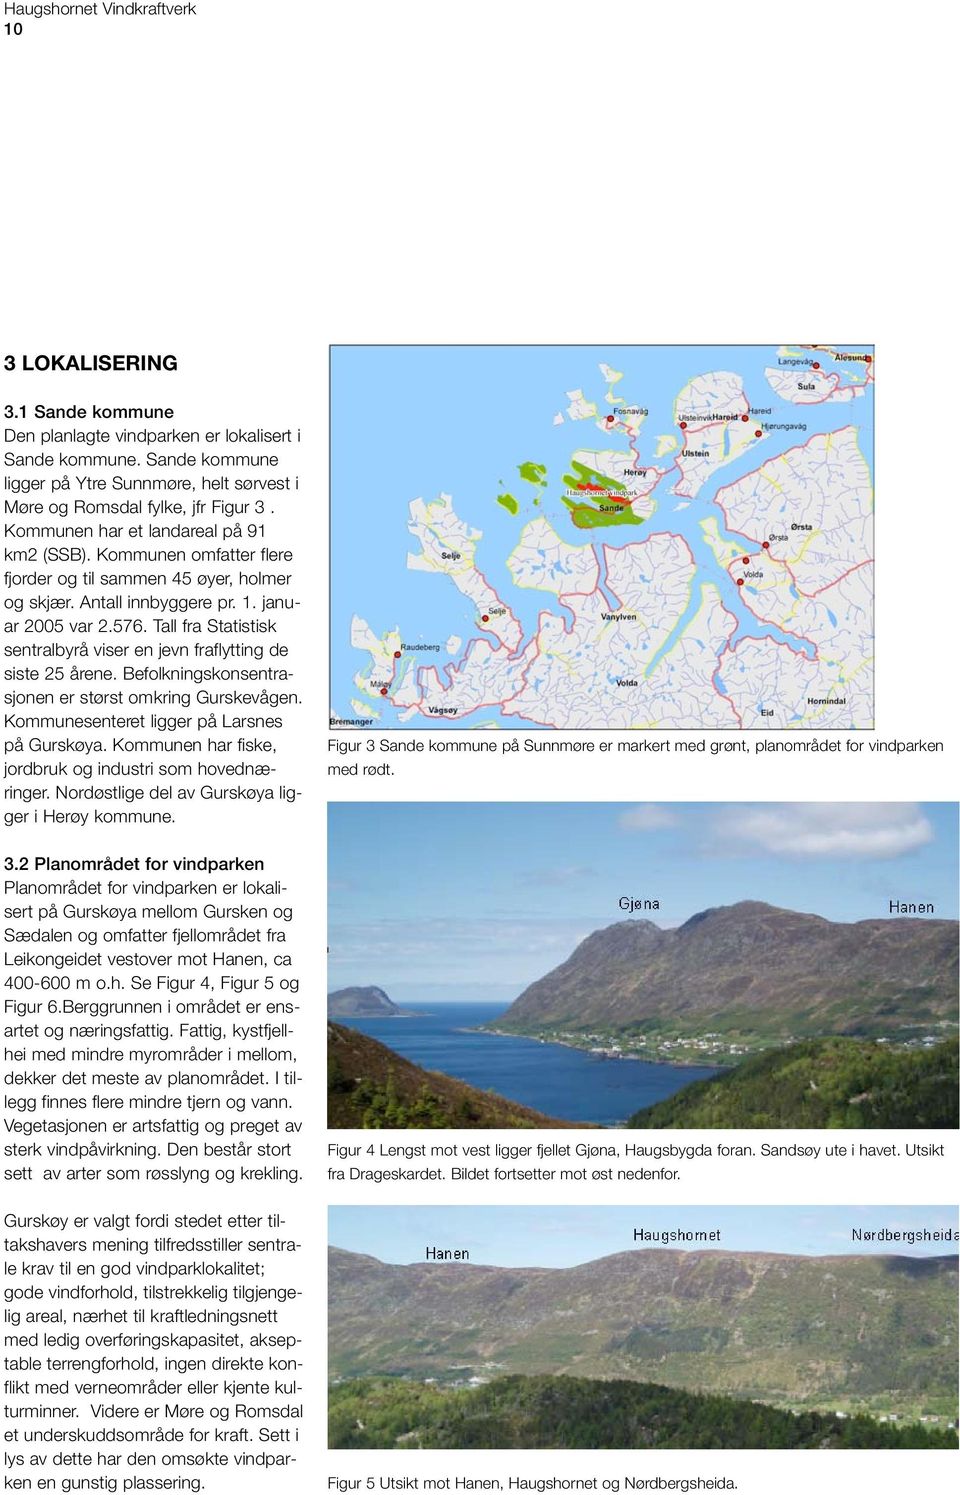 Kommunen omfatter flere fjorder og til sammen 45 øyer, holmer og skjær. Antall innbyggere pr. 1. januar 2005 var 2.576. Tall fra Statistisk sentralbyrå viser en jevn fraflytting de siste 25 årene.